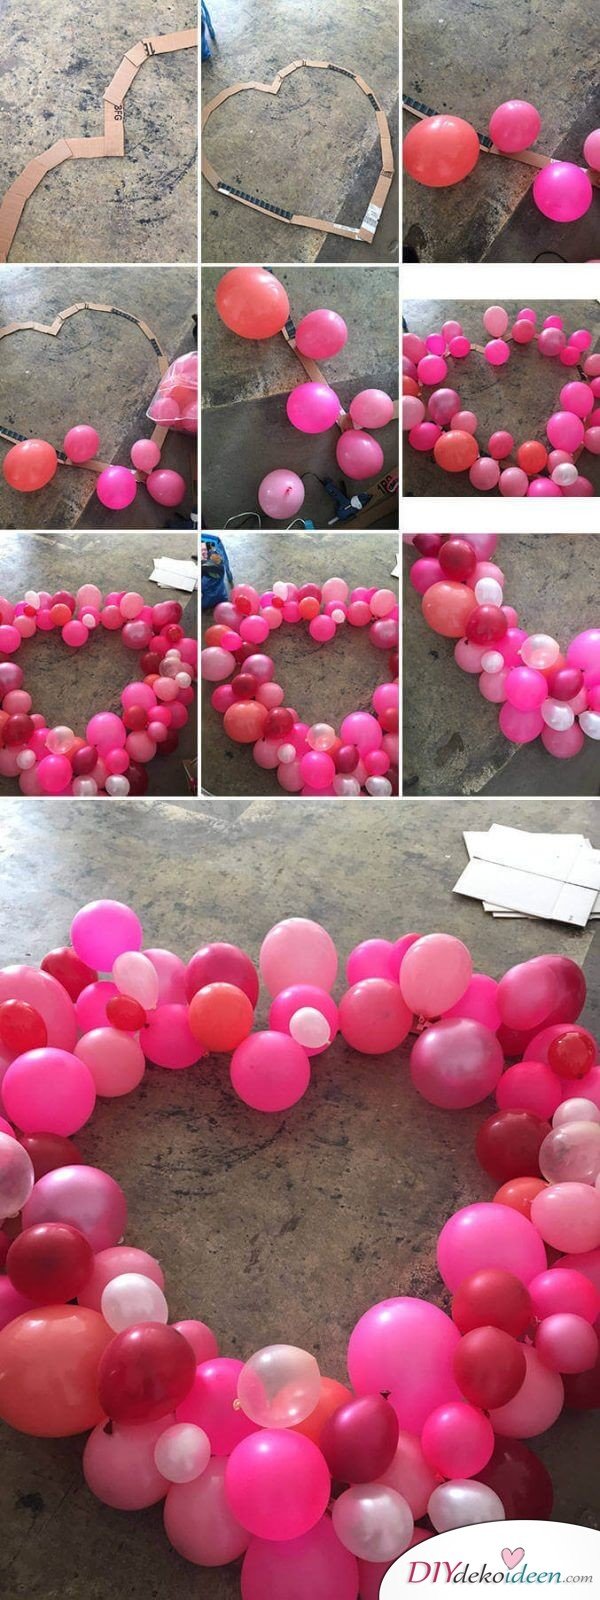 Riesenherz aus Luftballons - DIY Dekoidee für den Valentinstag